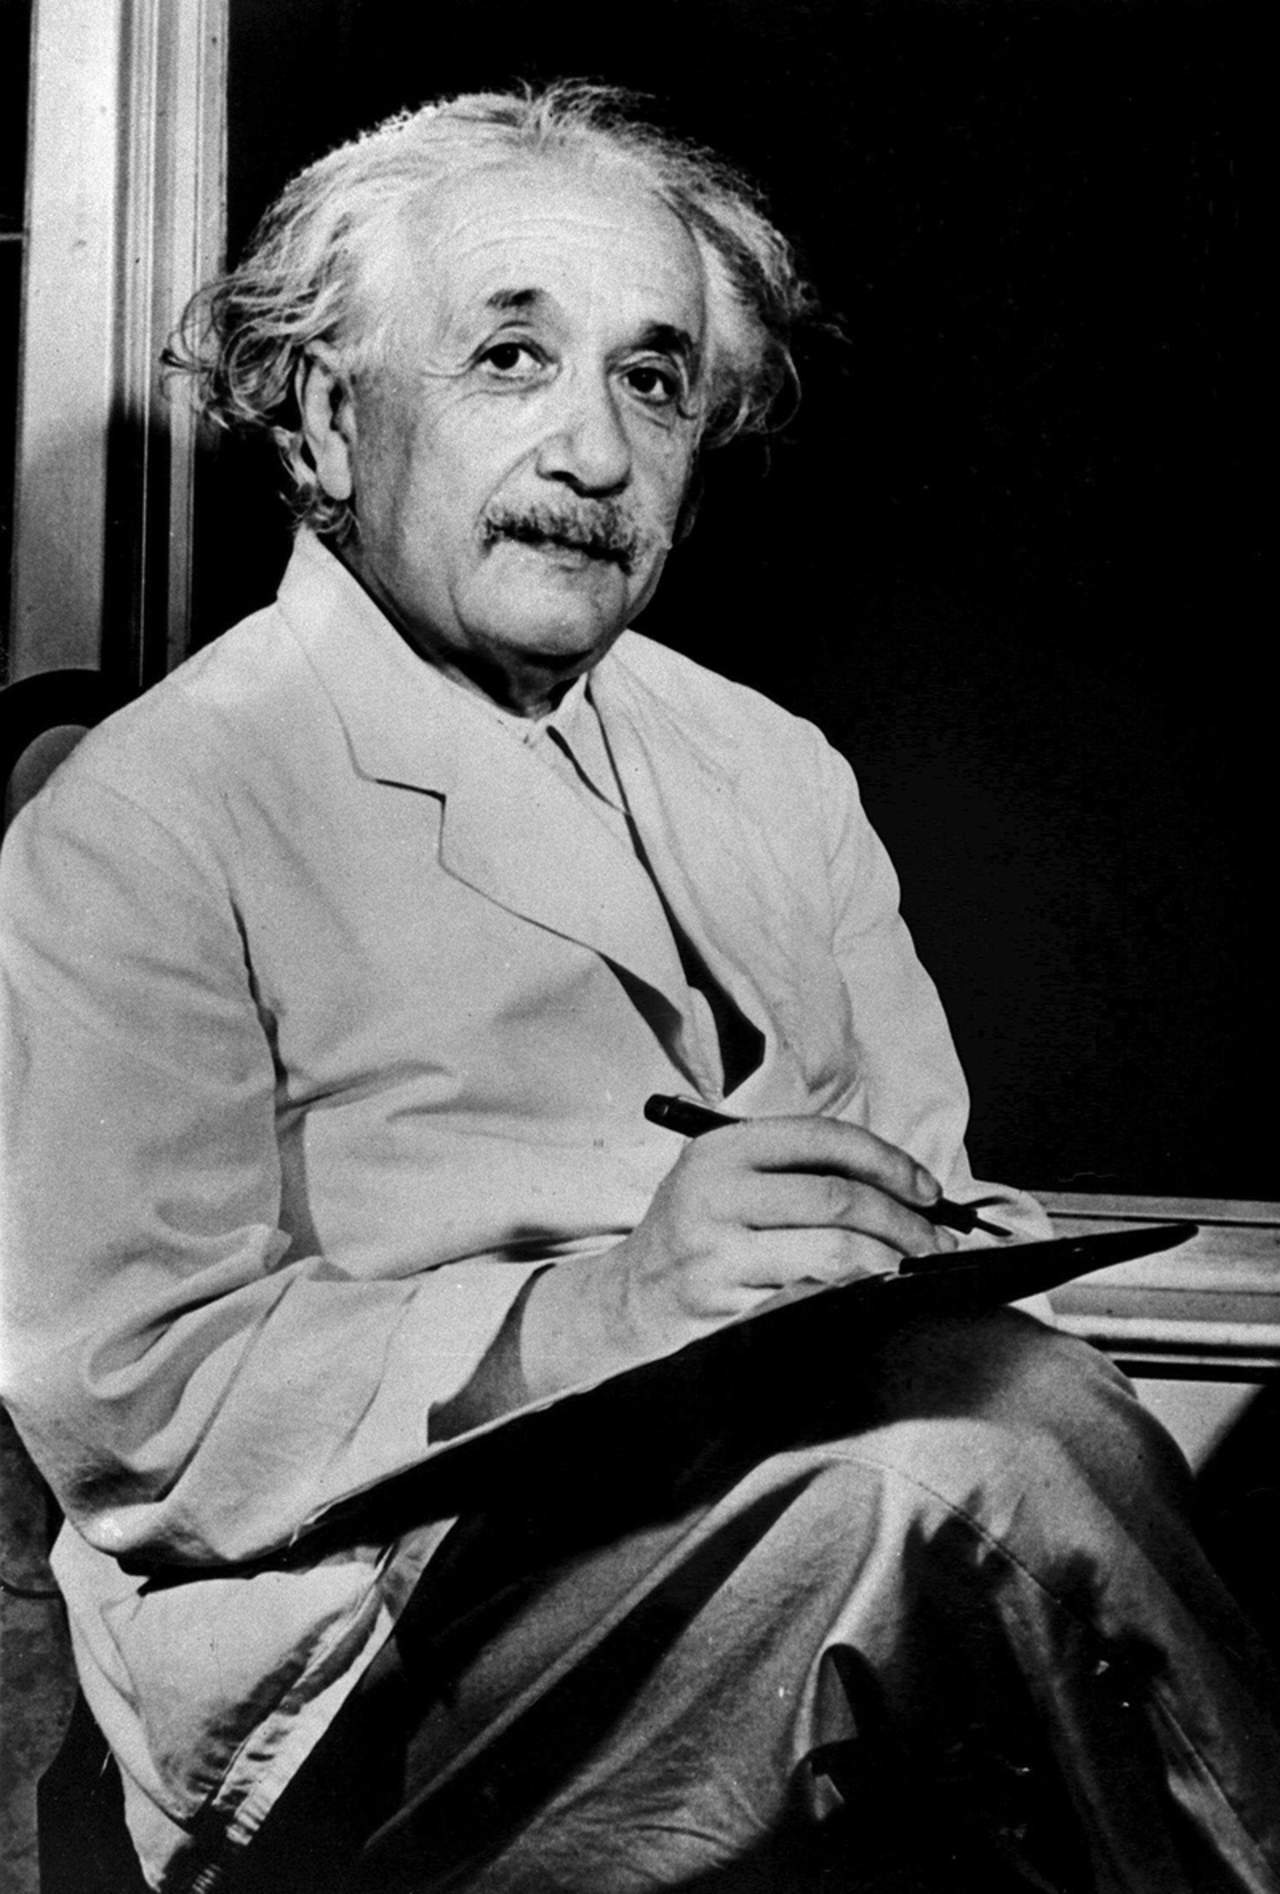 1879: Da su primer respiro Albert Einstein, el científico más conocido y popular del siglo XX